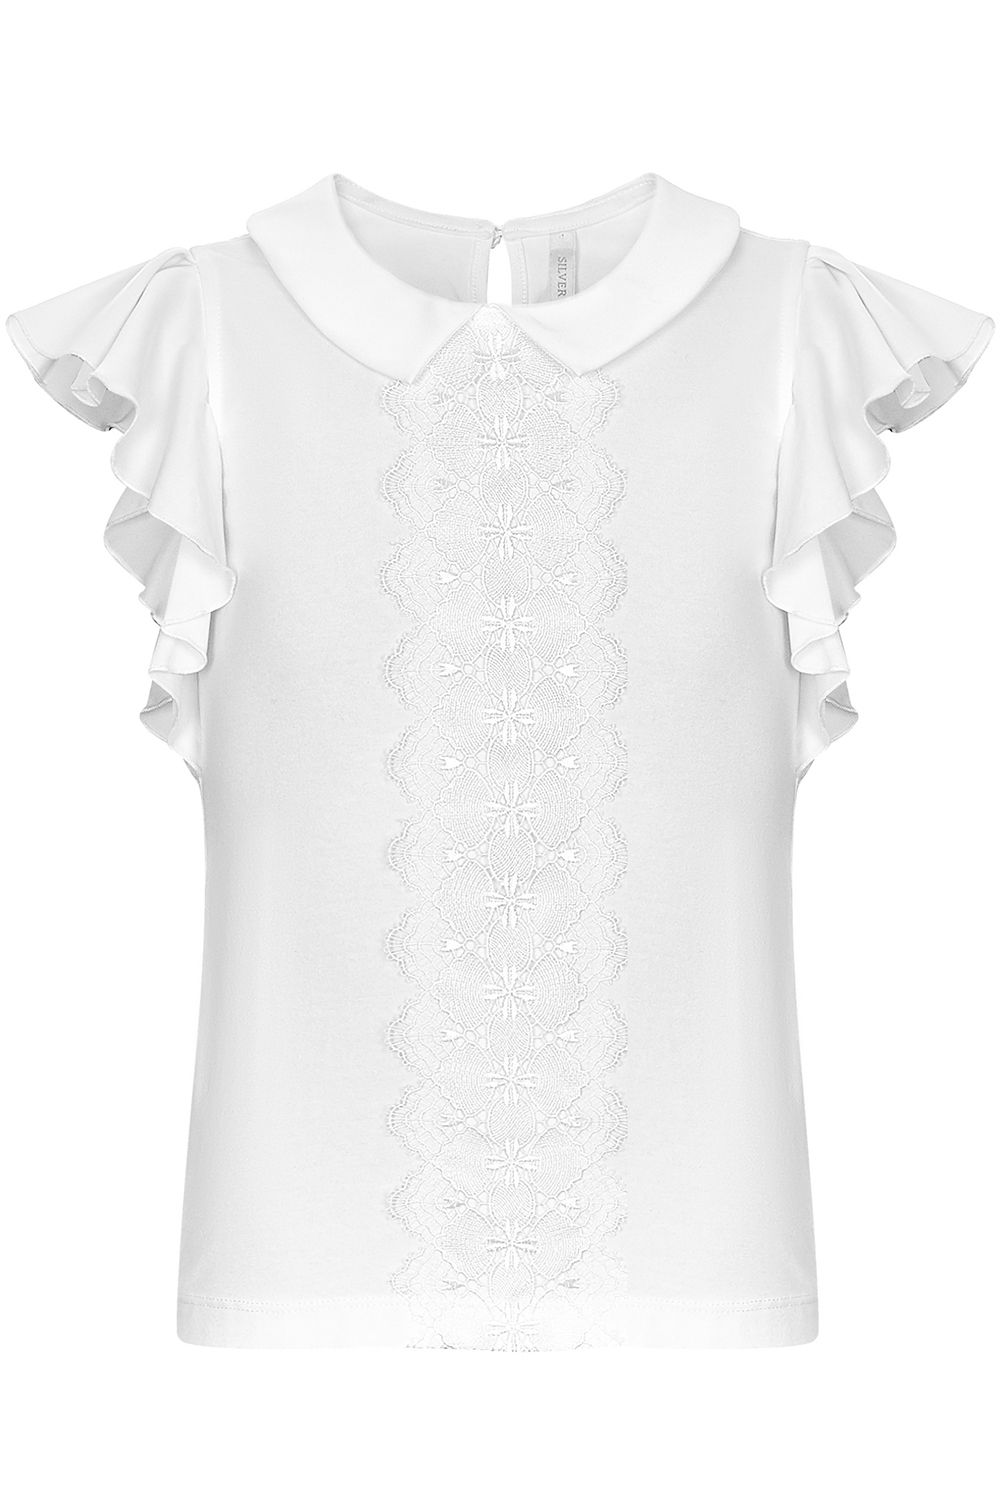 Блуза Silver Spoon, размер 122, цвет белый SSFSG-928-23103-201 - фото 1